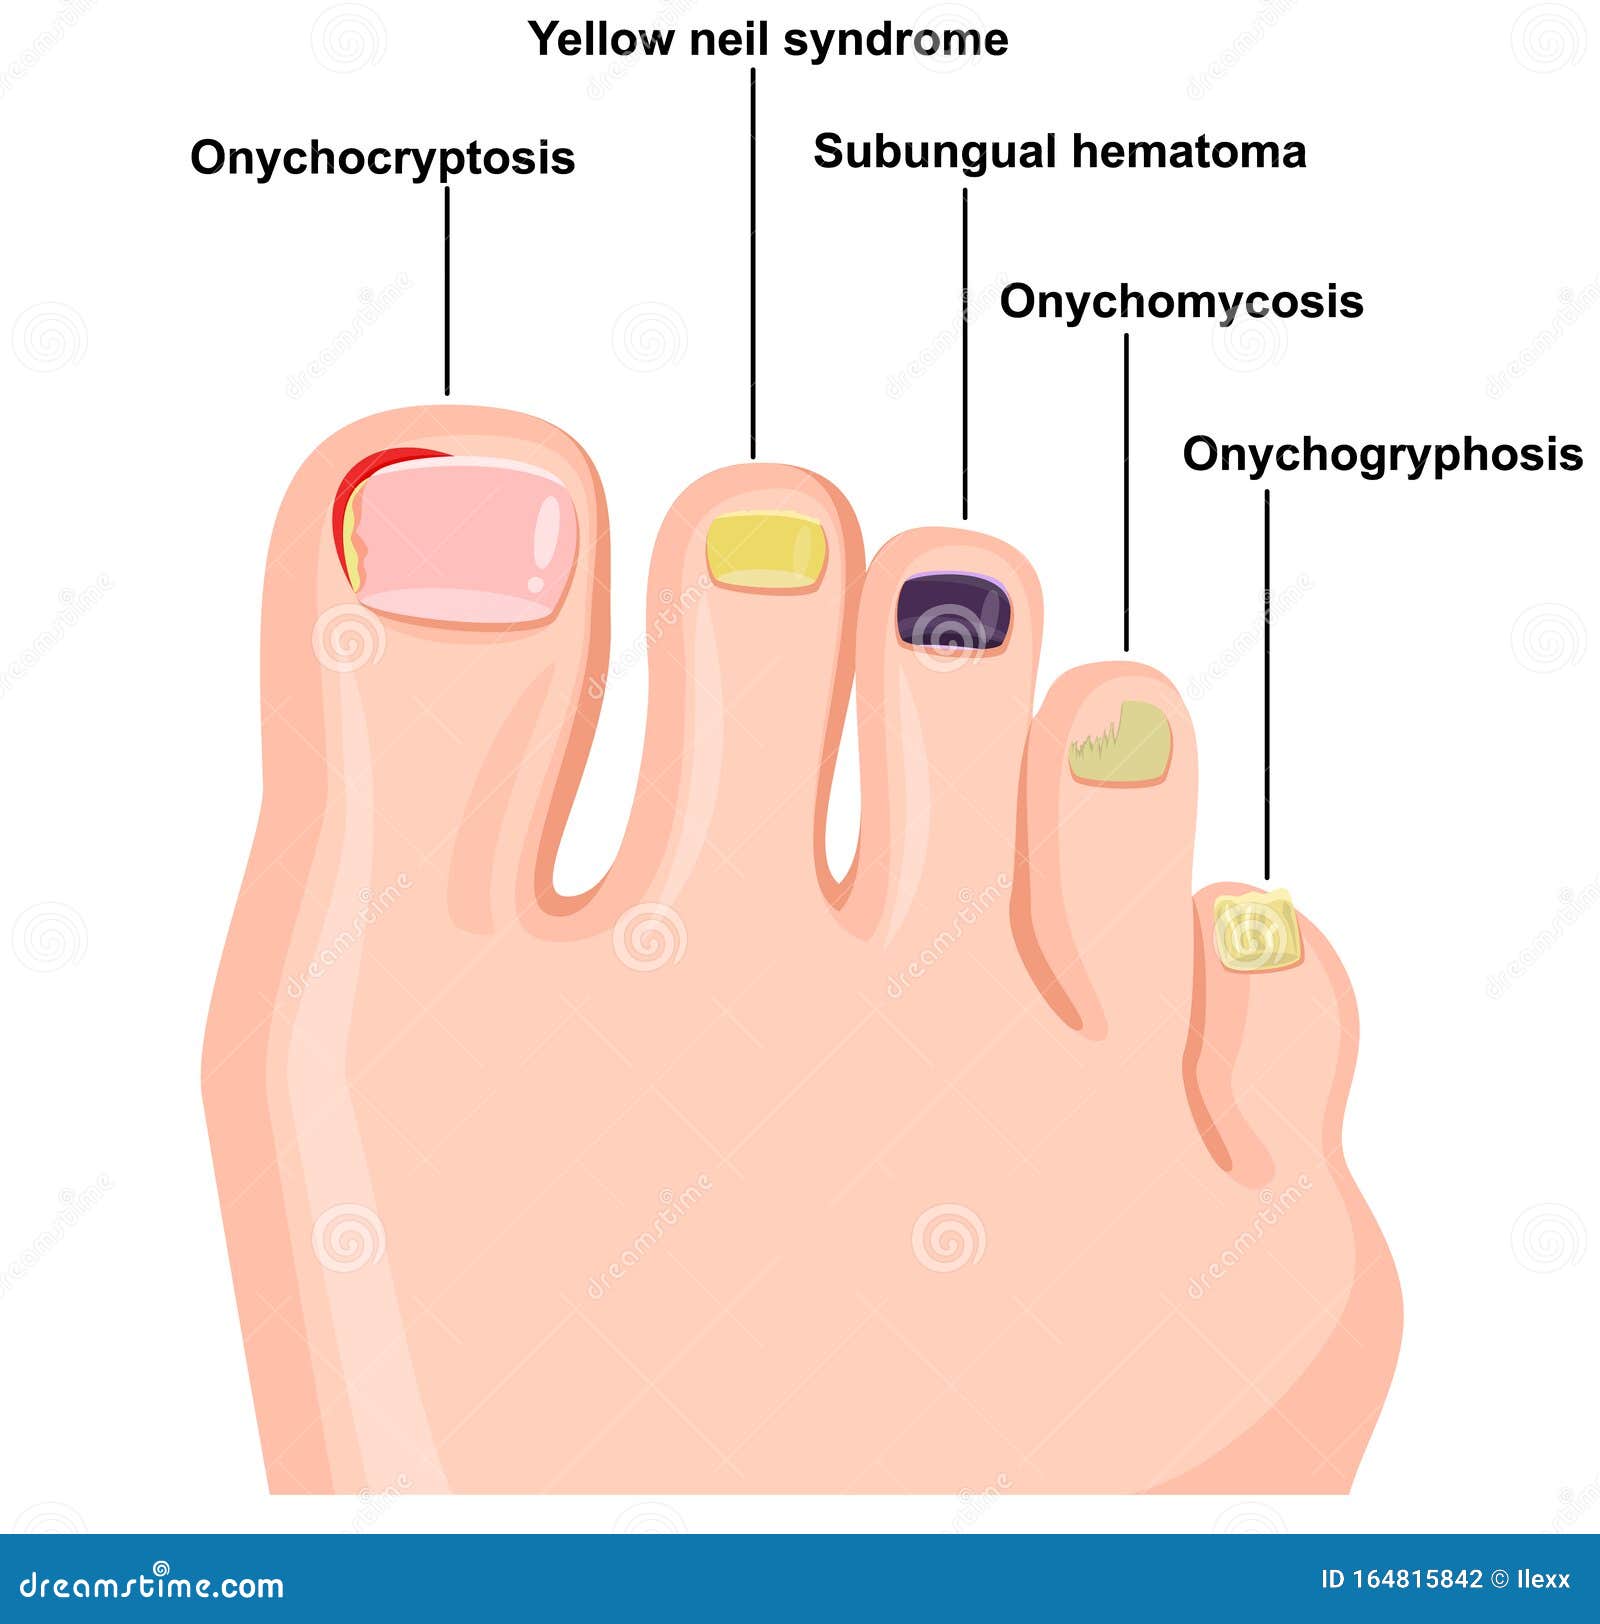 କଣ ନଖା ବା ନଖ ଭାଙ୍ଗିବାକୁ ନେଇ ଚିନ୍ତିତ କି ? ପଢ଼ନ୍ତୁ ପୂରା ଖବର... - Nail  diseases chart: Pictures, symptoms, and treatments